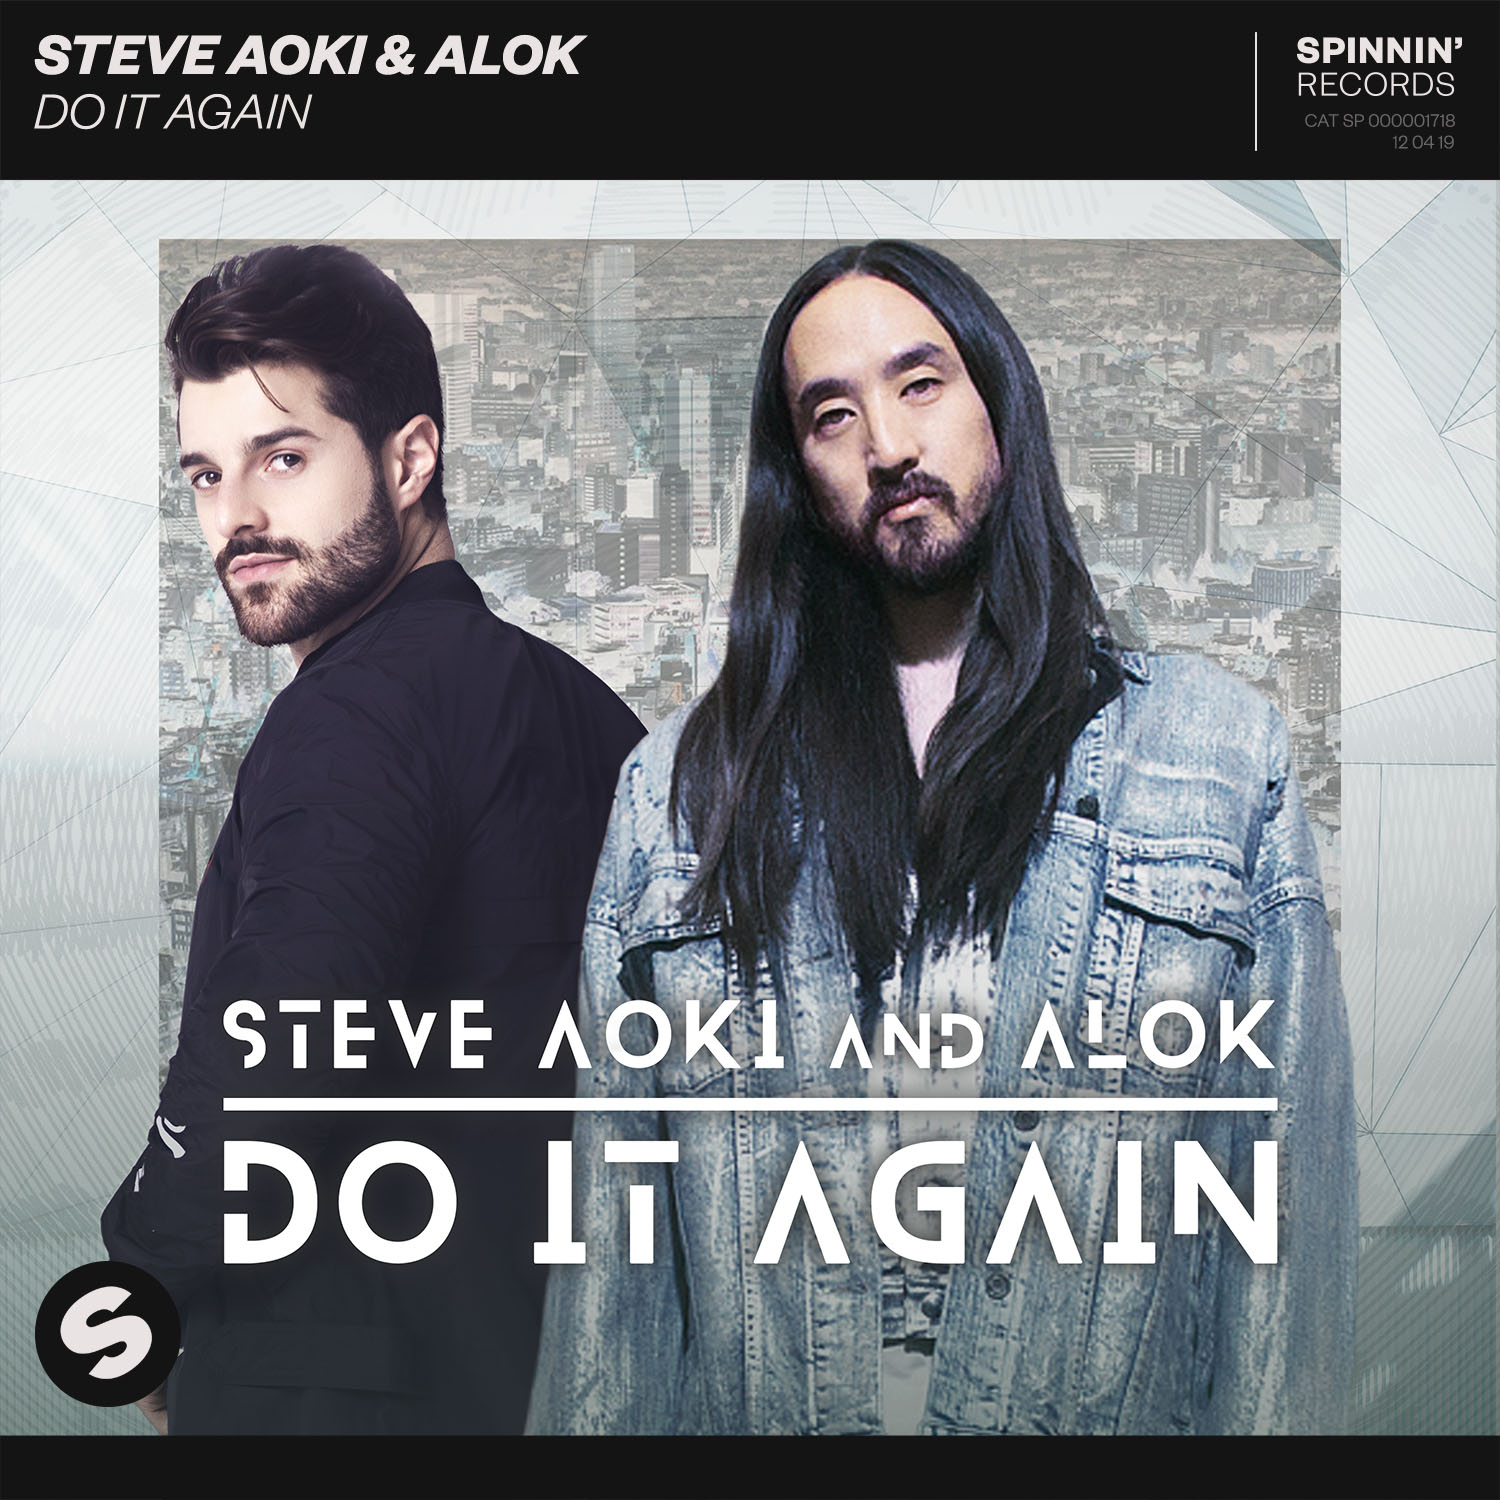 Alok e Steve Aoki lançam clipe de "Do It Again" e chamam a atenção para animais ameaçados de extinção 41